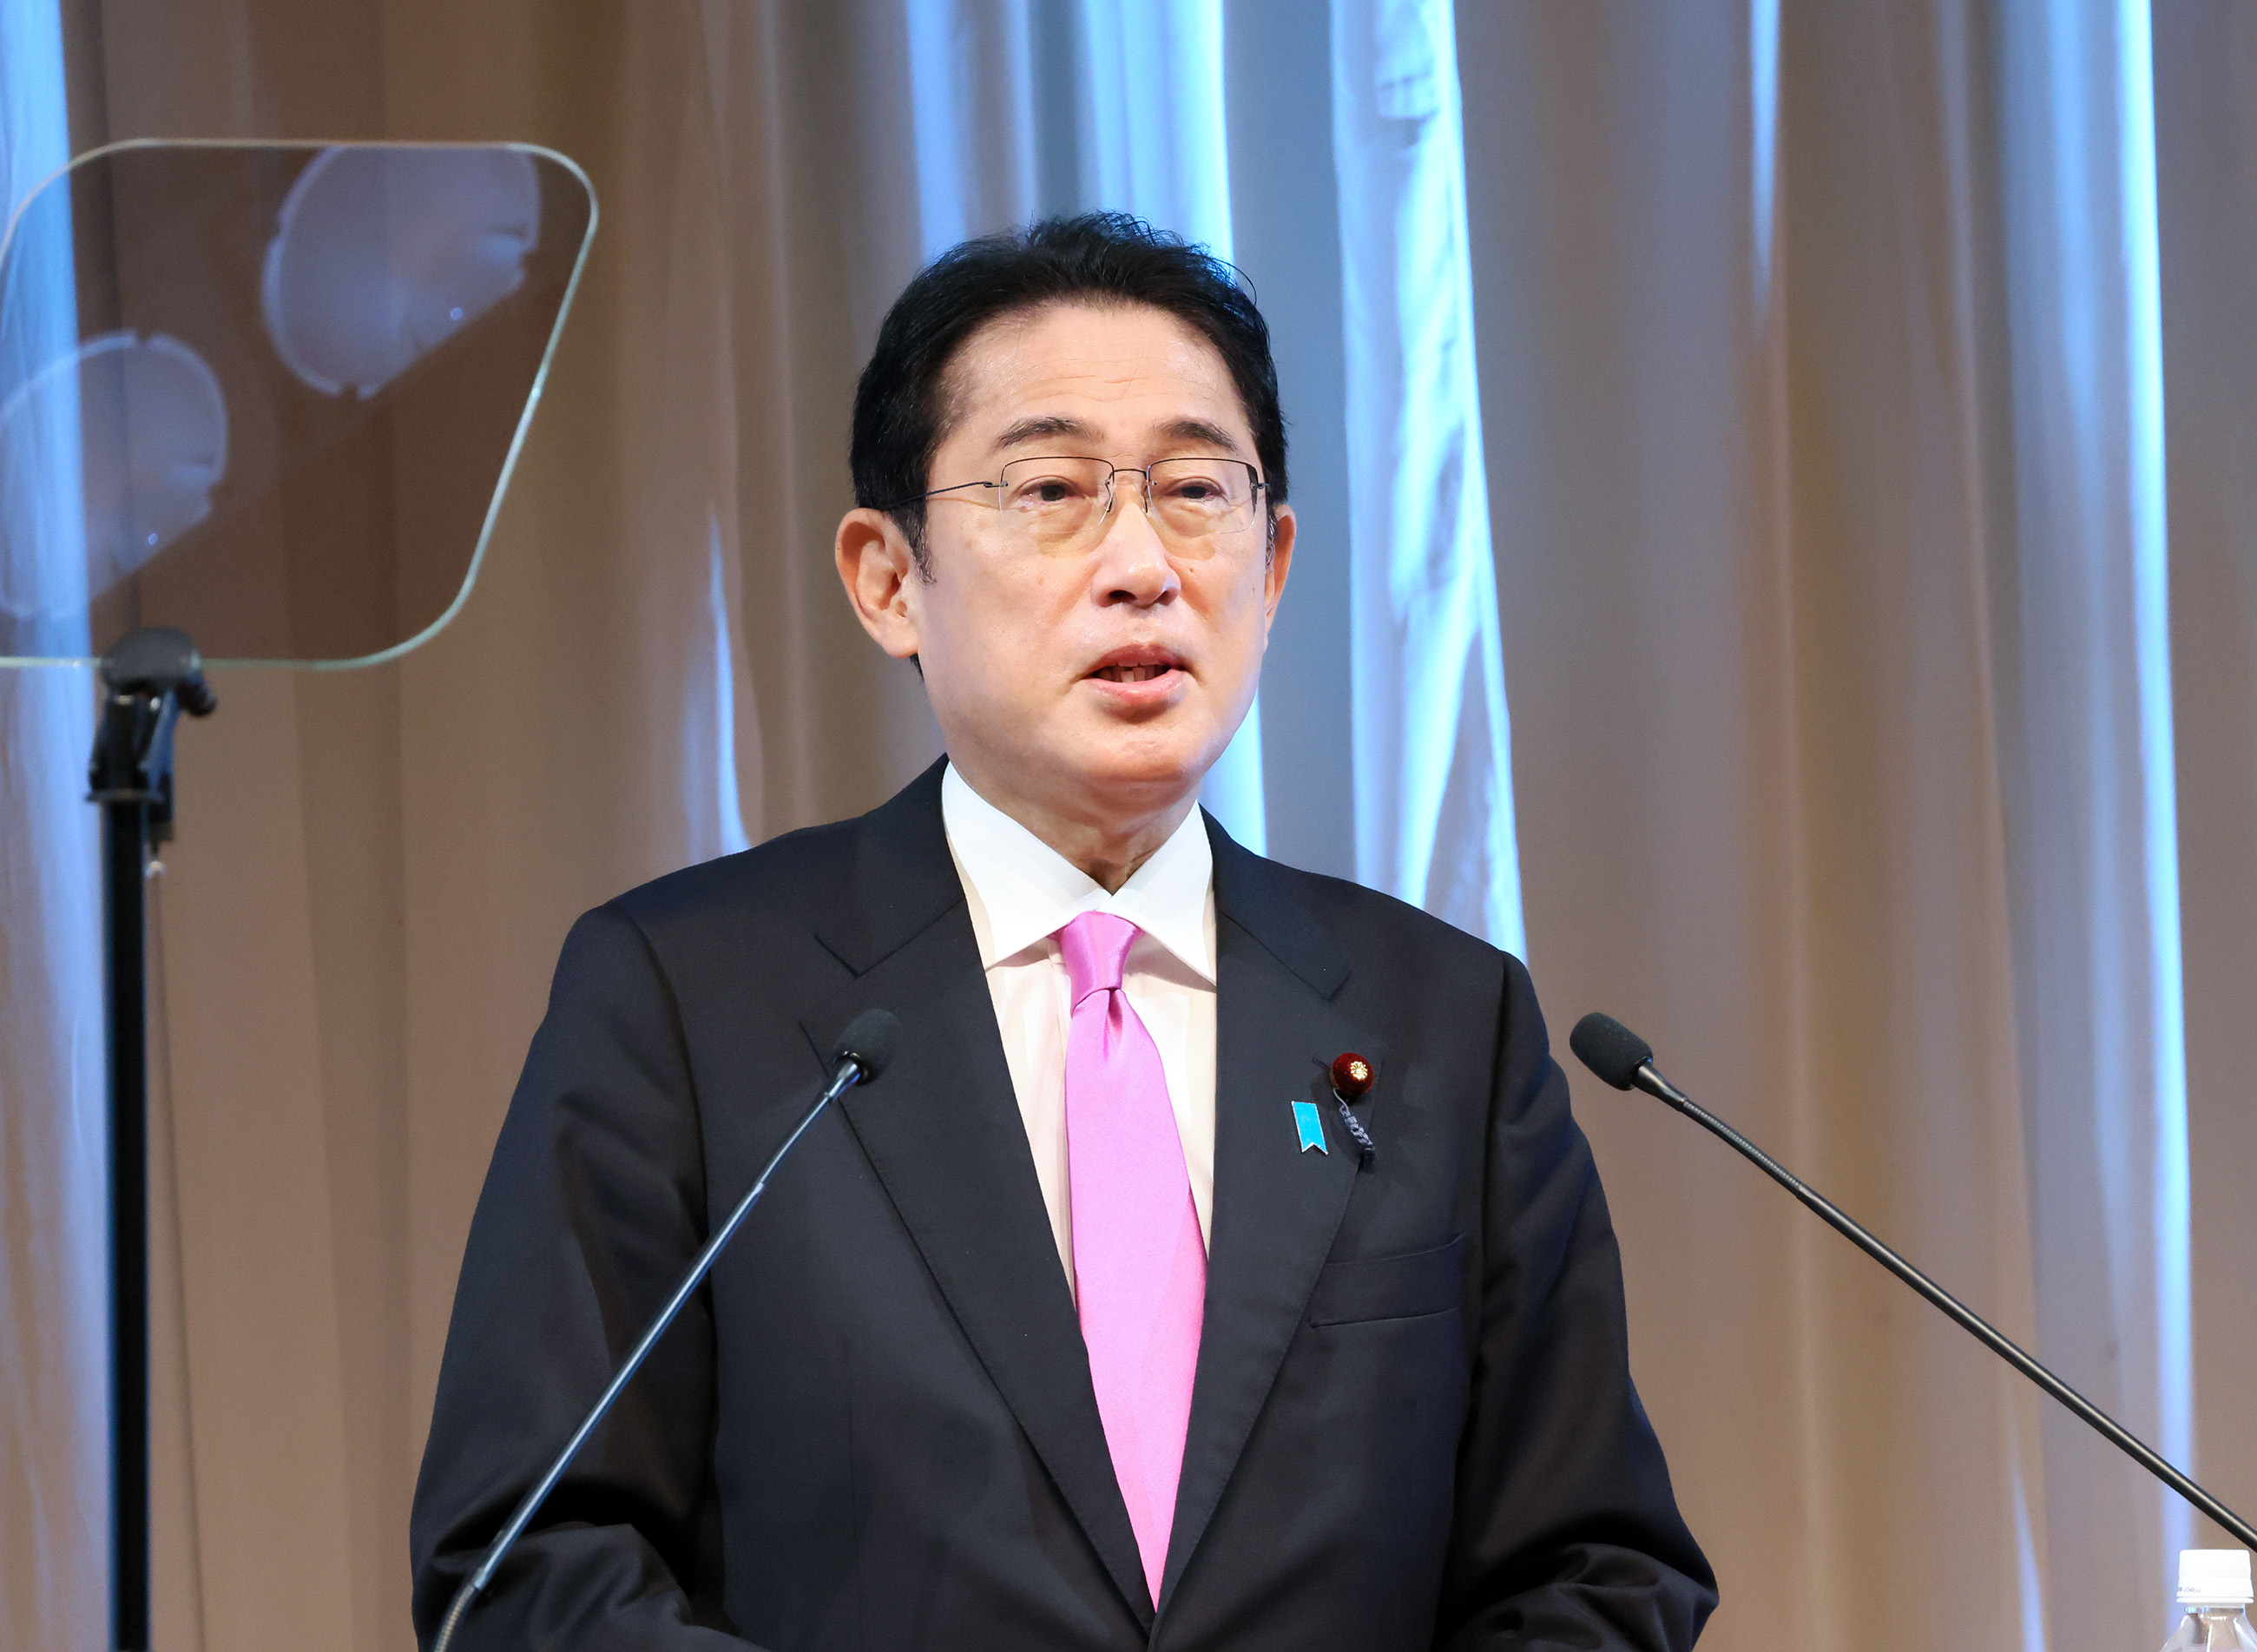 Prime Minister Kishida delivering an opening remarks (2)